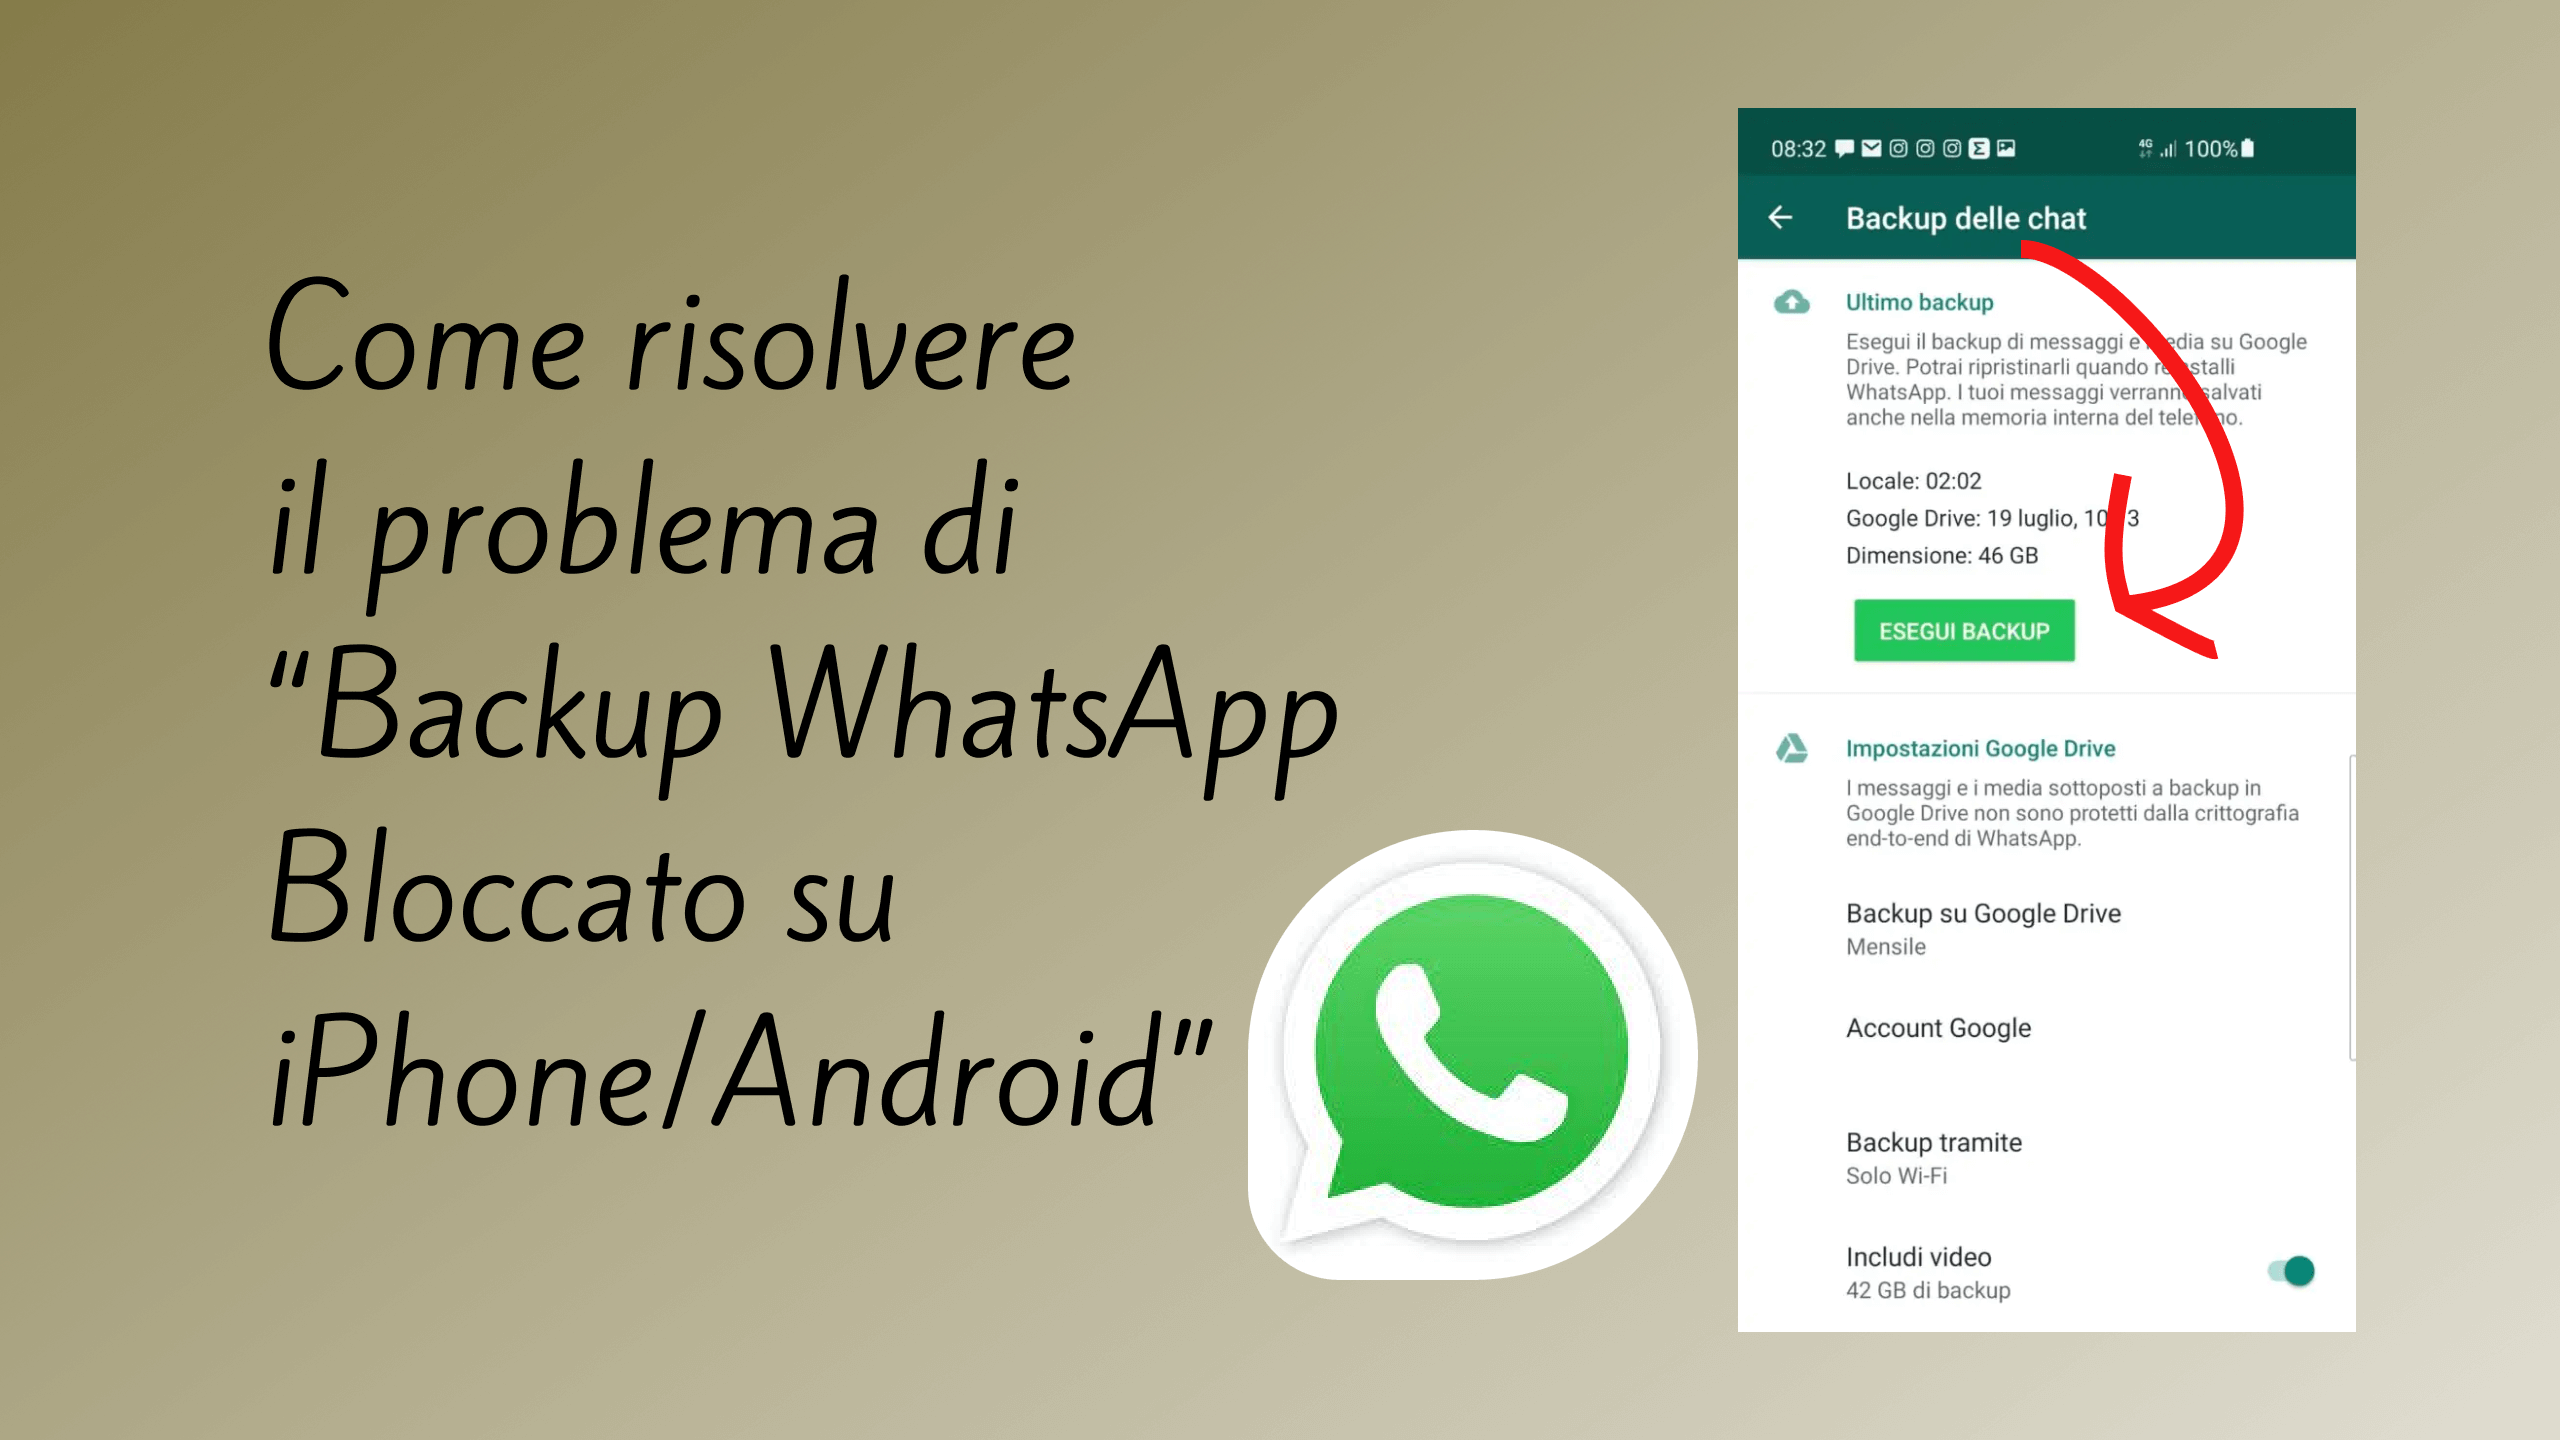 Backup WhatsApp bloccato